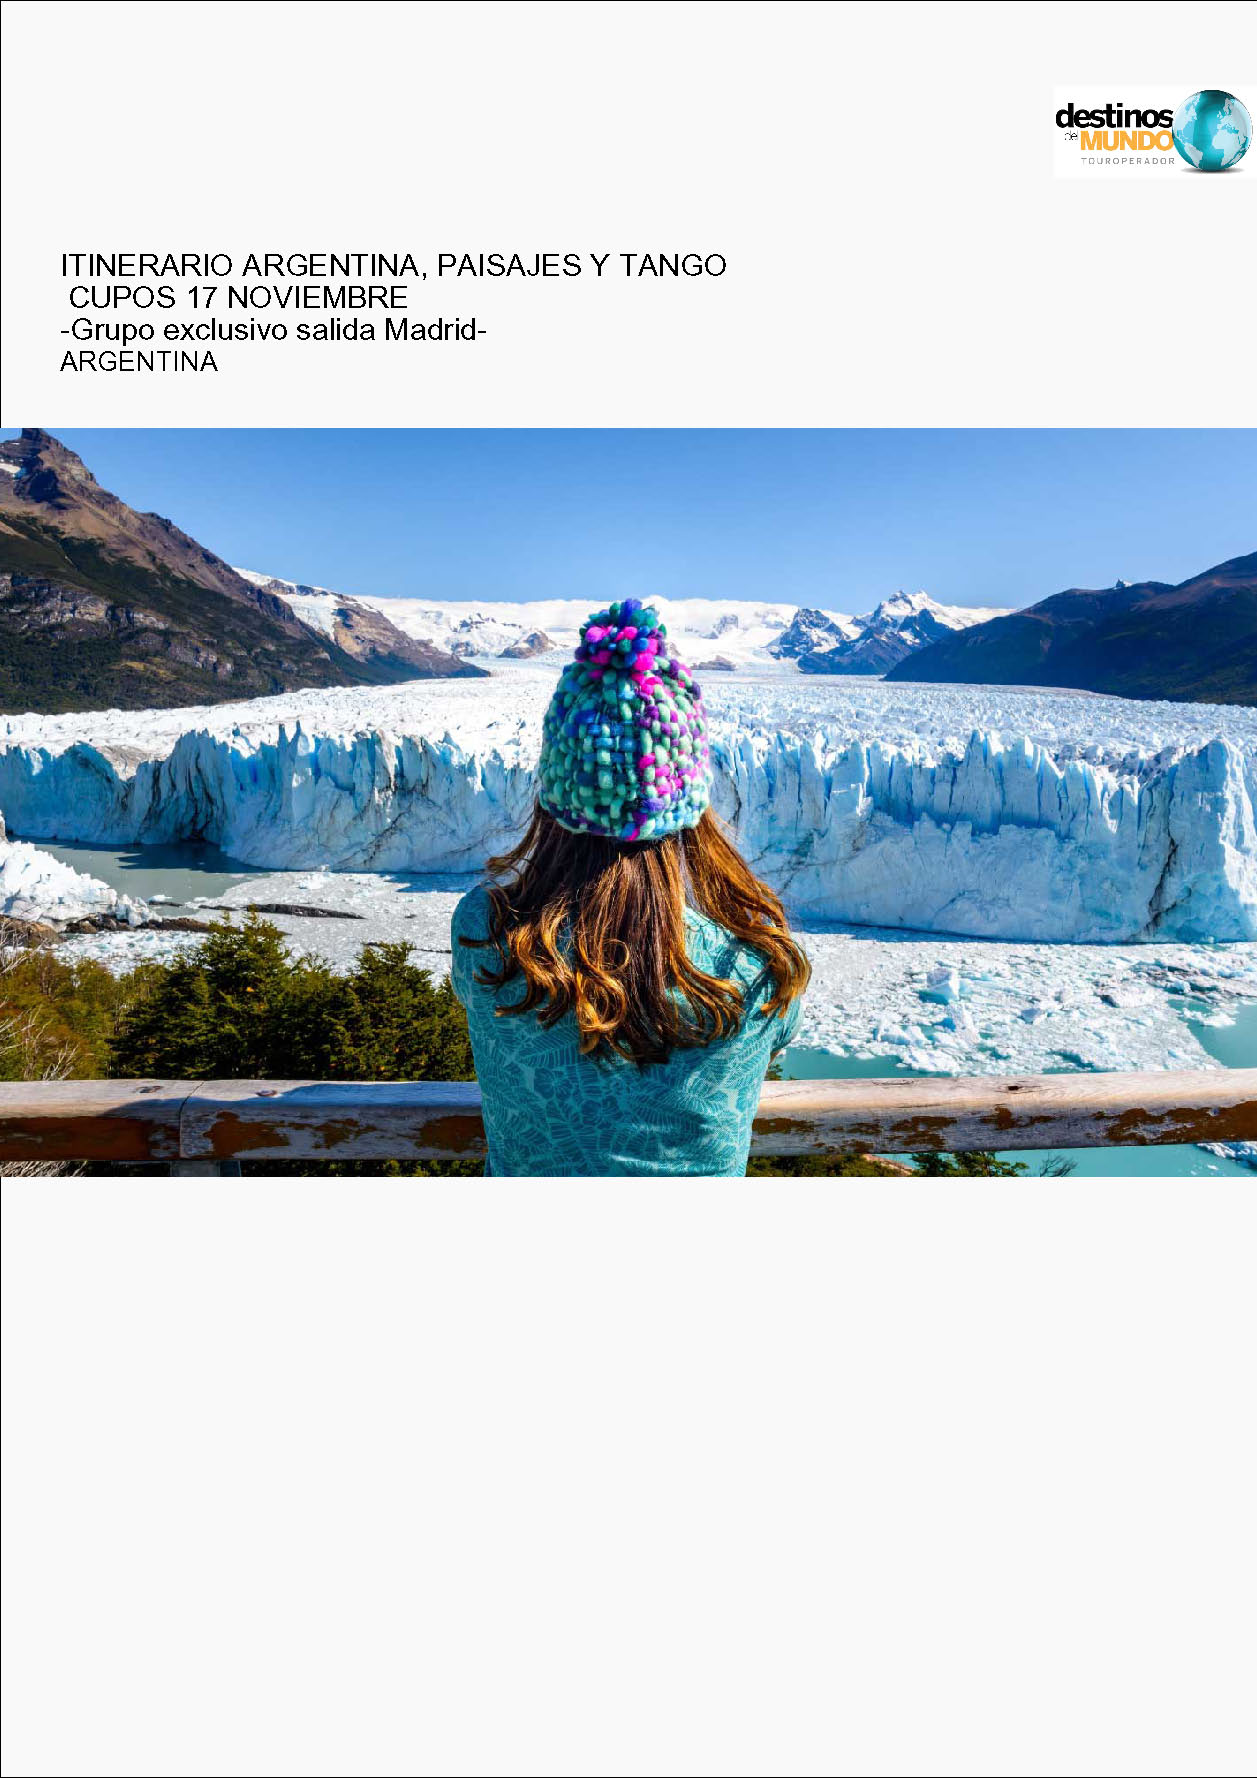 Oferta Destinos del Mundo Argentina Buenos Aires Ushuaia Calafate e Iguazu 12 dias Noviembre 2023 salidas desde Madrid